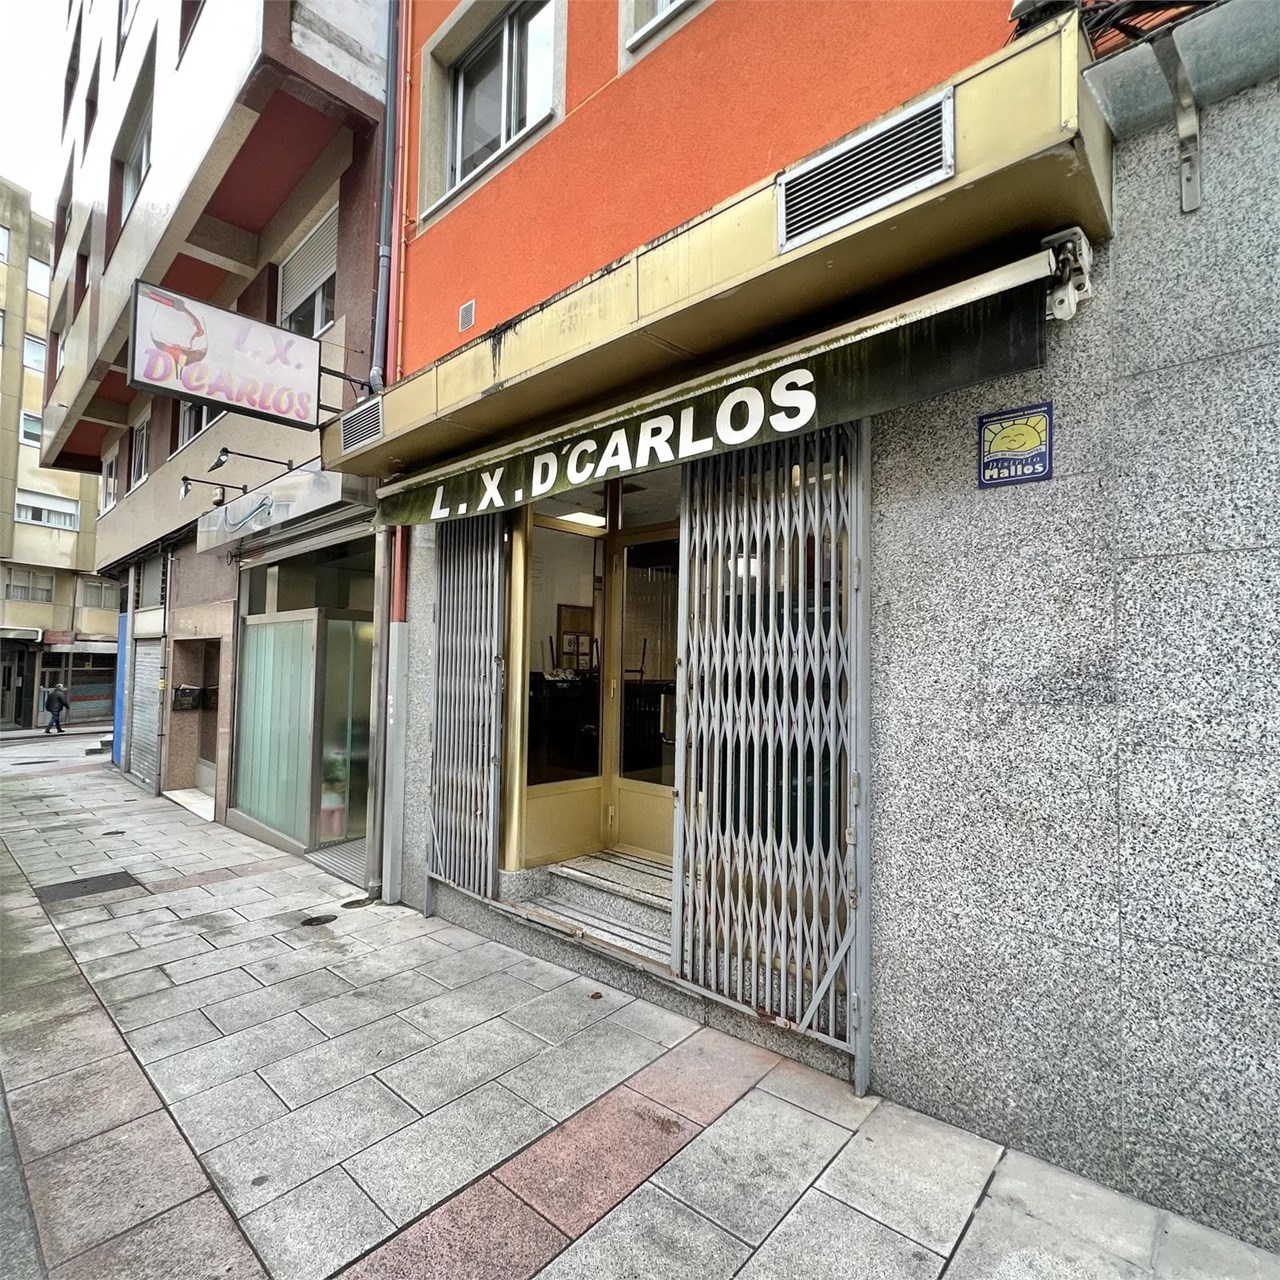 Foto 13 Bar en Calle Pedroso, ubicado en los Mallos